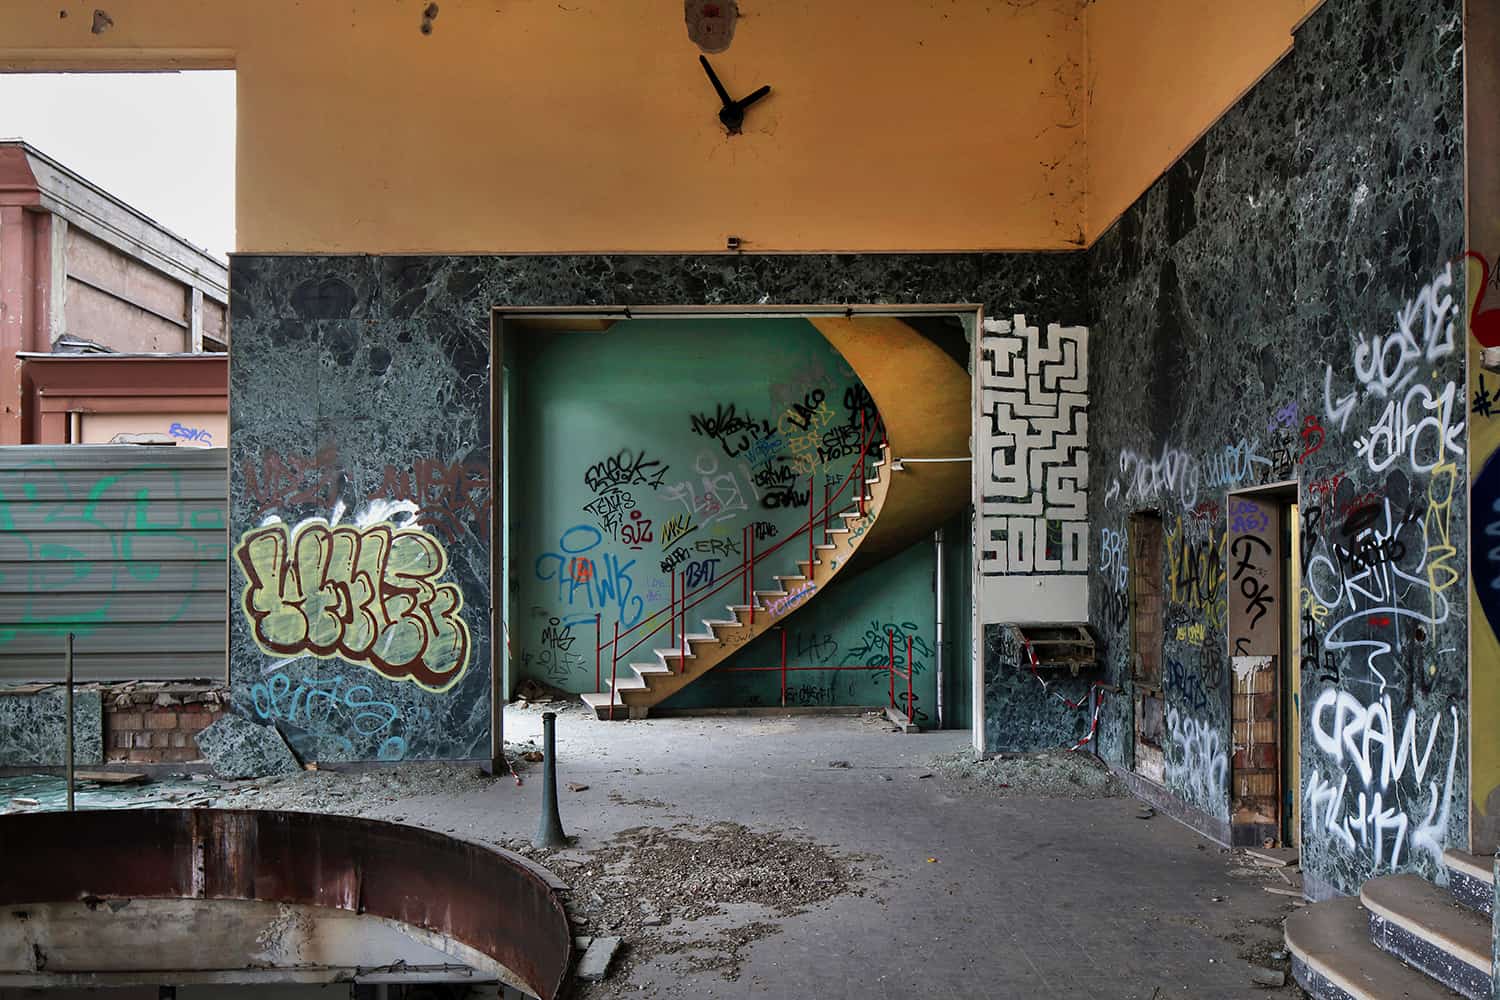 photographie d'architecture d'un bâtiment désaffecté avec des graffitis sur ses murs © francois nussbaumer